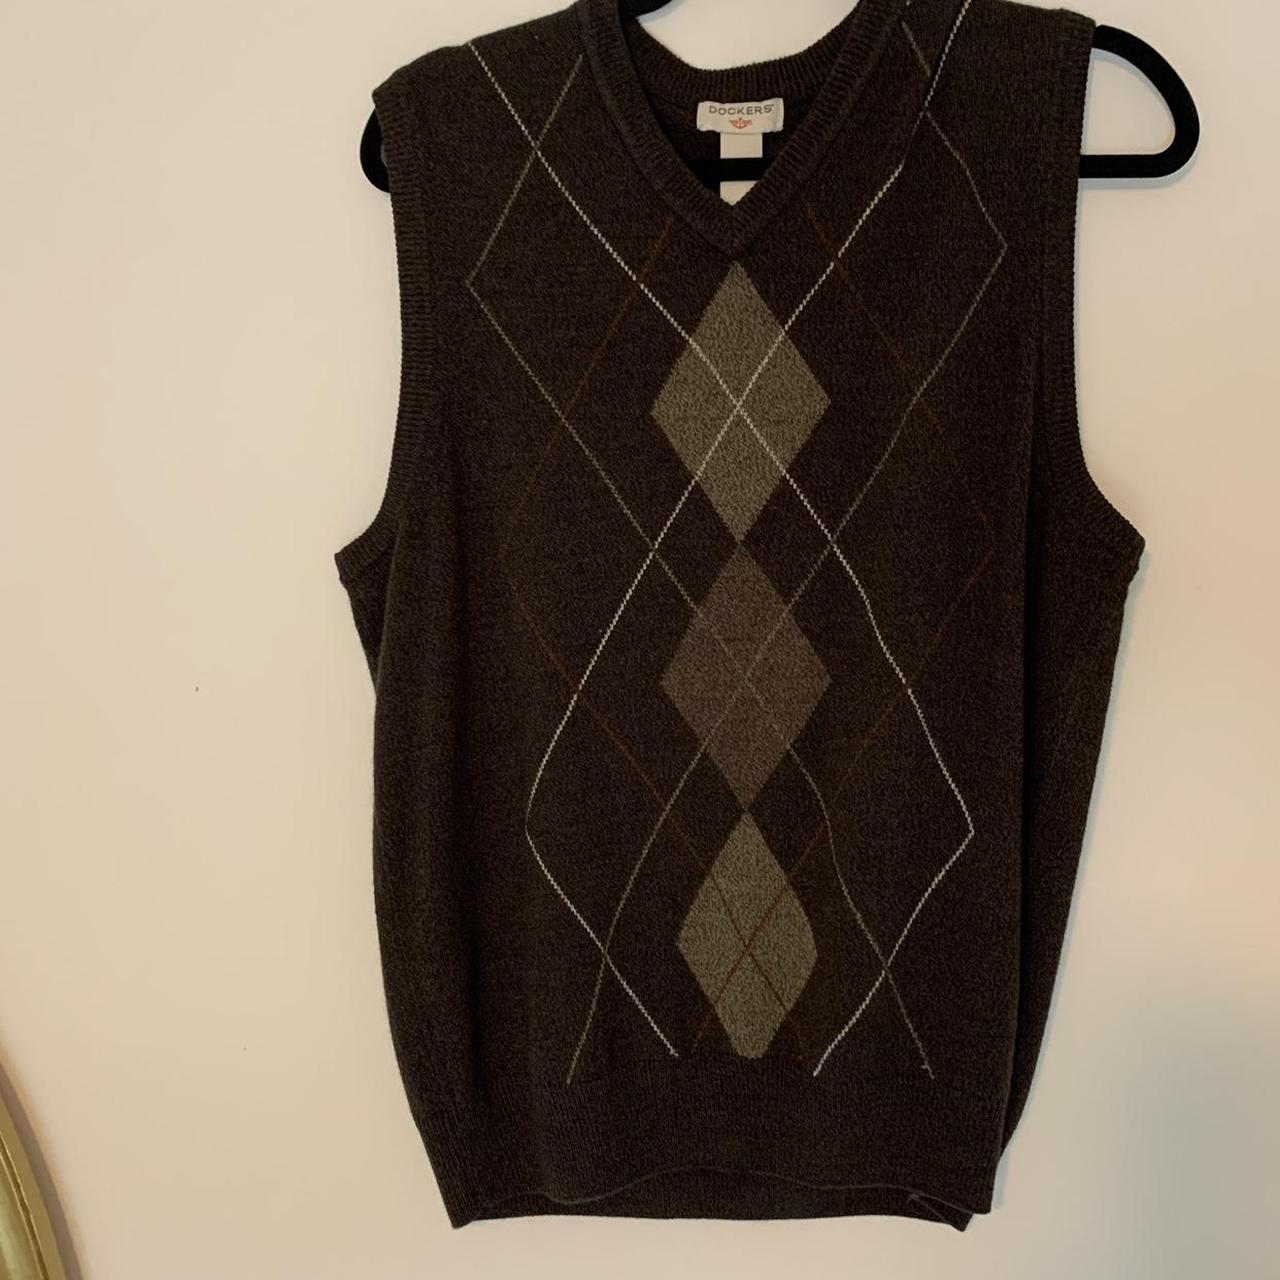 Brown Dockers sweater vest - Depop